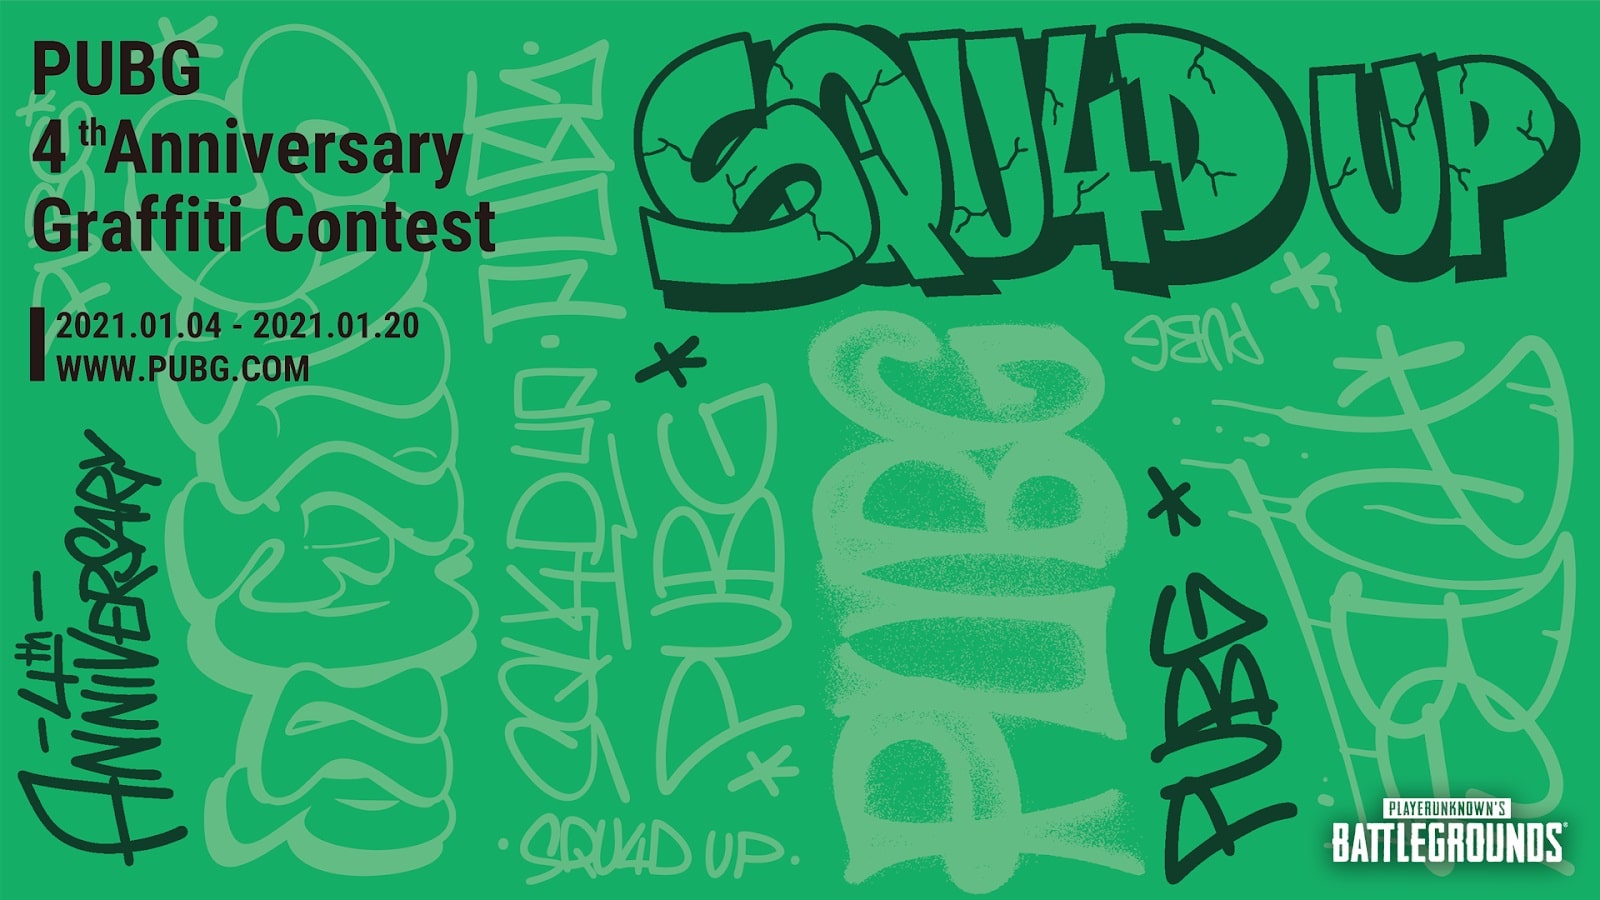 PUBG celebra su cuarto aniversario con concurso de graffiti, GamersRd